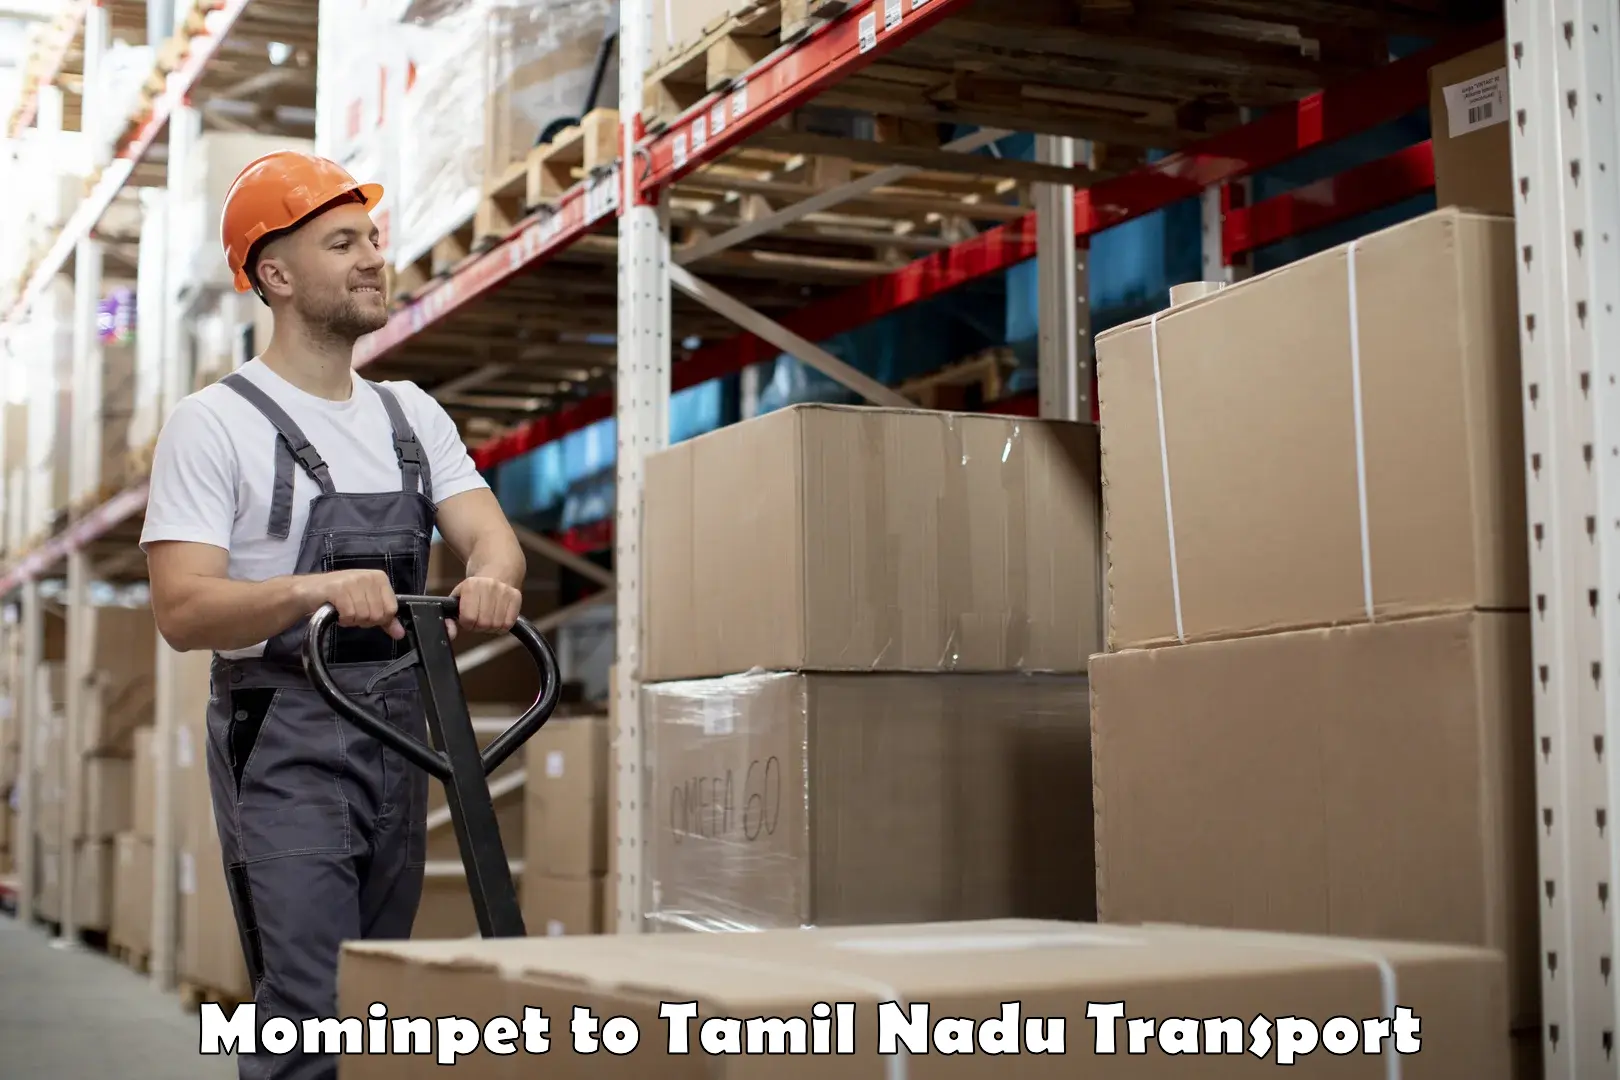 Online transport service Mominpet to Tirunelveli